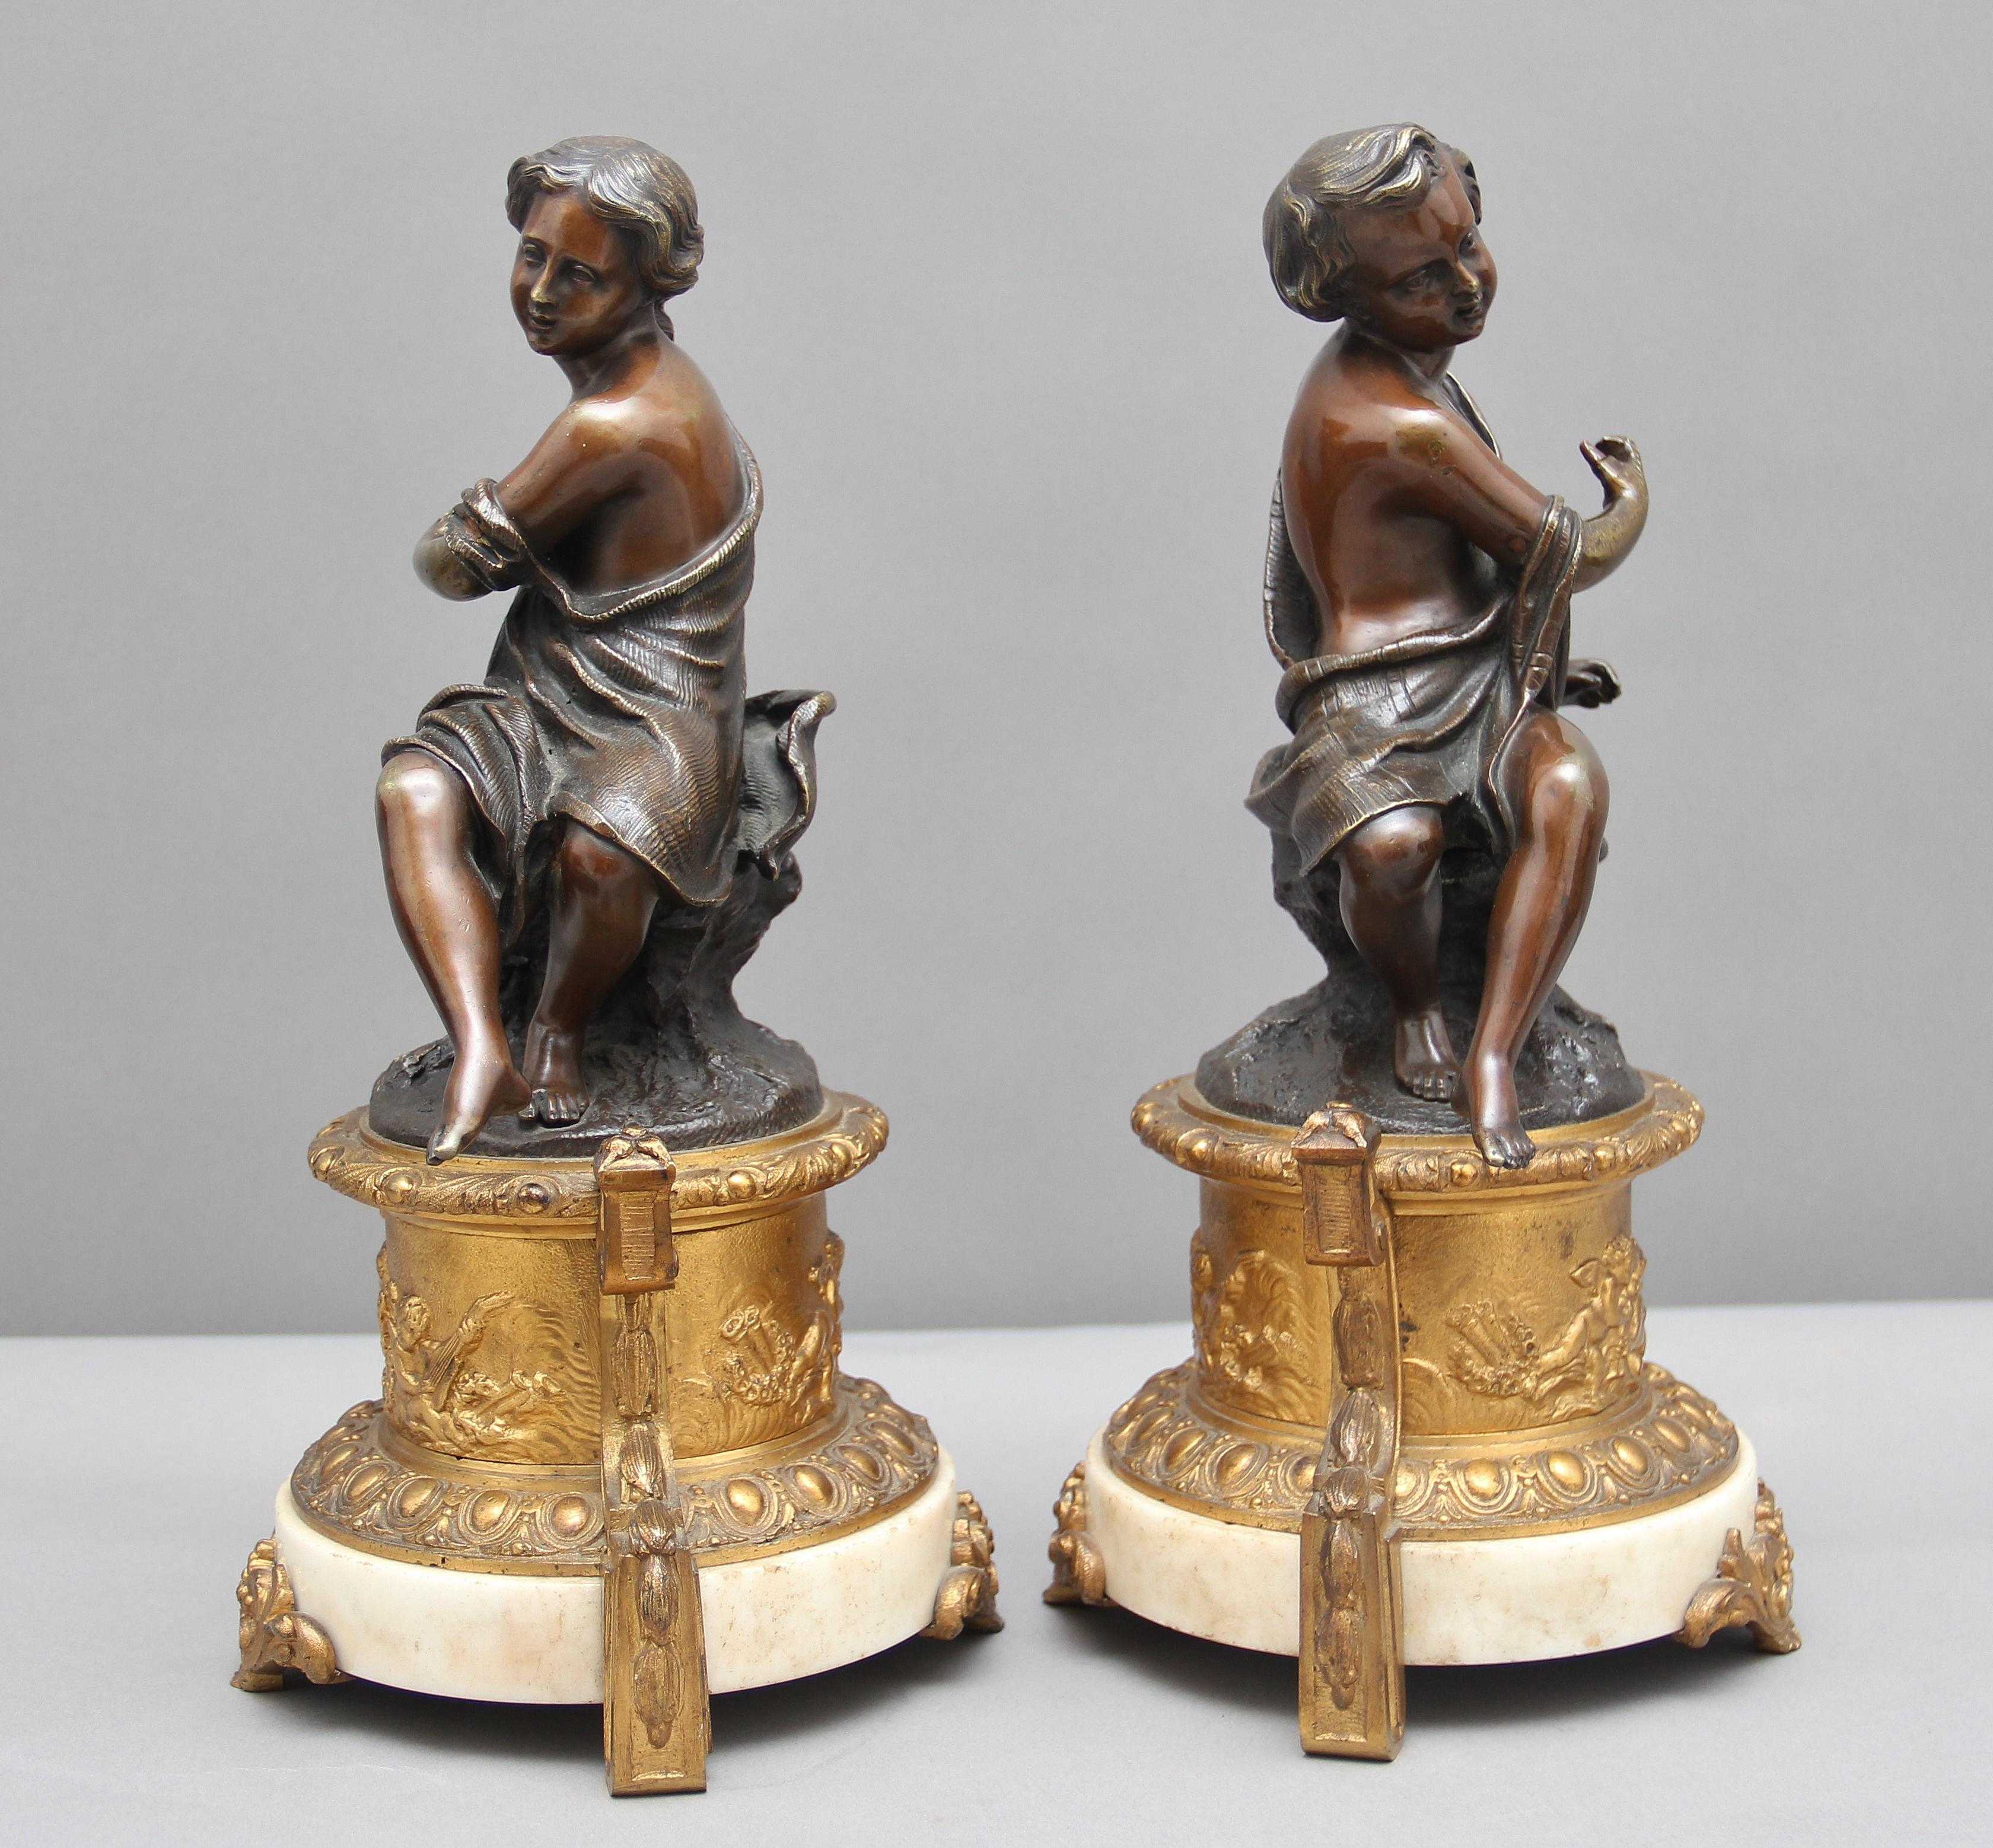 Ein Paar französischer Bronzefiguren aus dem 19. Jahrhundert, ein Junge und ein Mädchen, jede Figur sitzend und in Gewänder gekleidet, getragen auf fein gegossenen zylindrischen Sockeln aus vergoldeter Bronze, die mit gegenüberliegenden